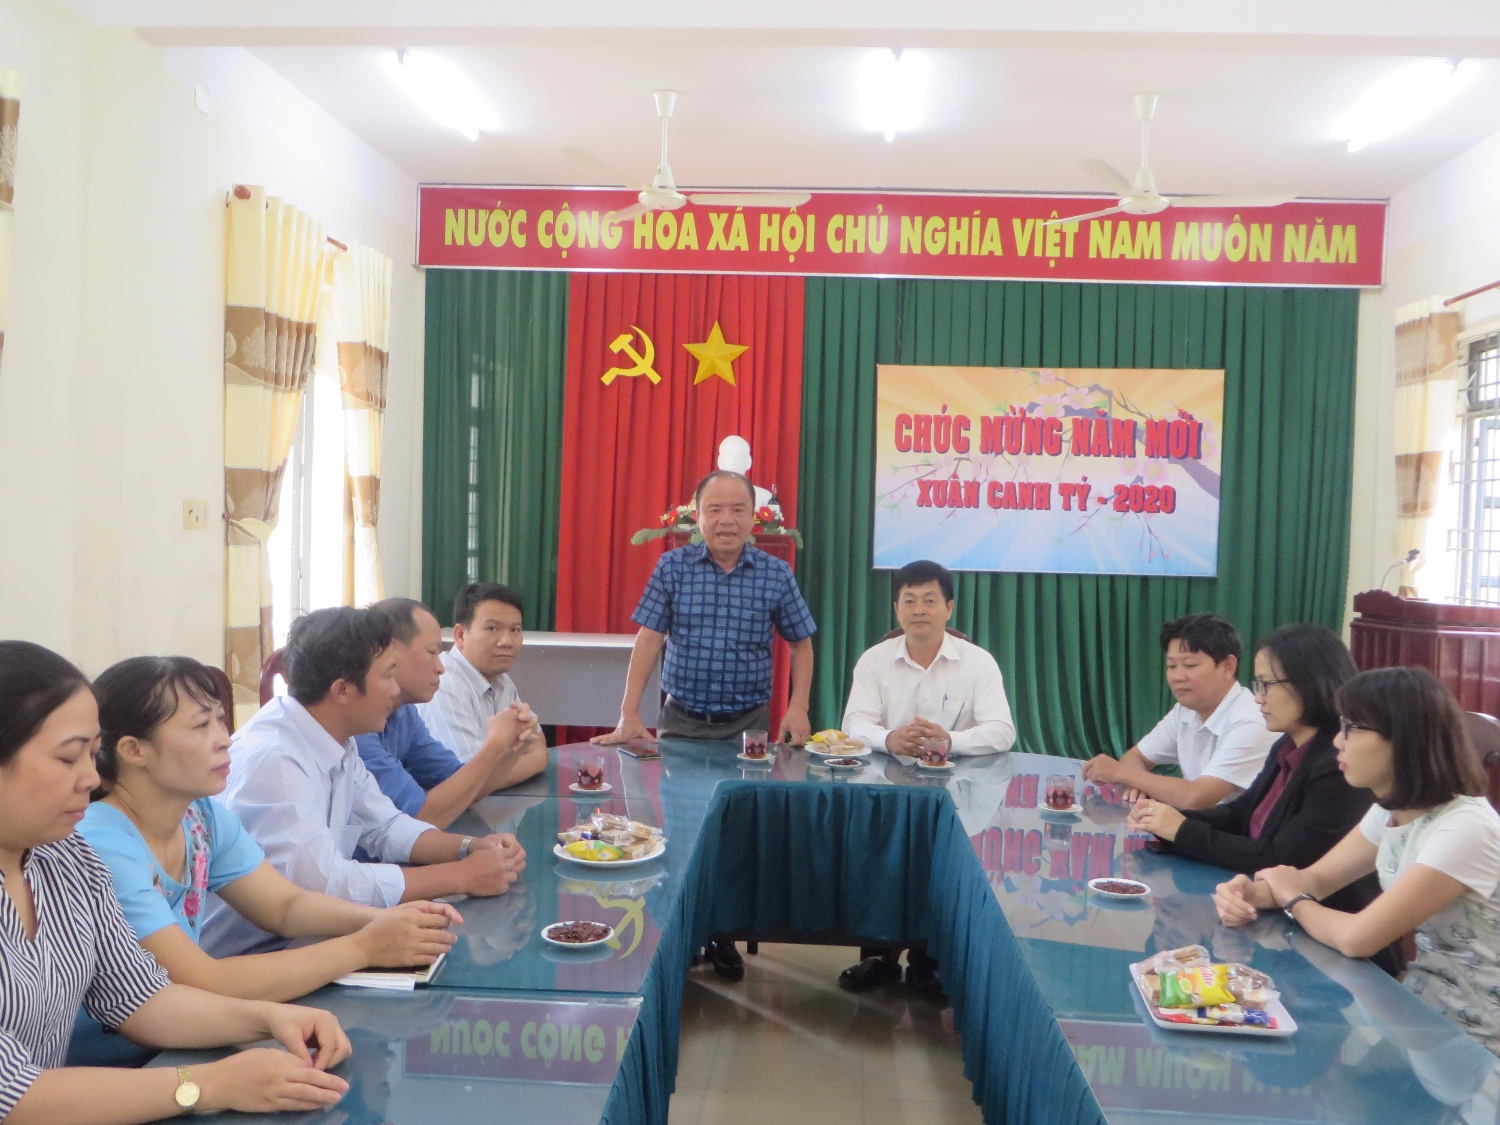 Ông Võ Bình Tân, phó Giám đốc Sở Lao động – Thương binh và Xã hội tỉnh Khánh Hòa  phát biểu chúc mừng năm mới tới cán bộ, giáo viên, nhân viên nhà Trường